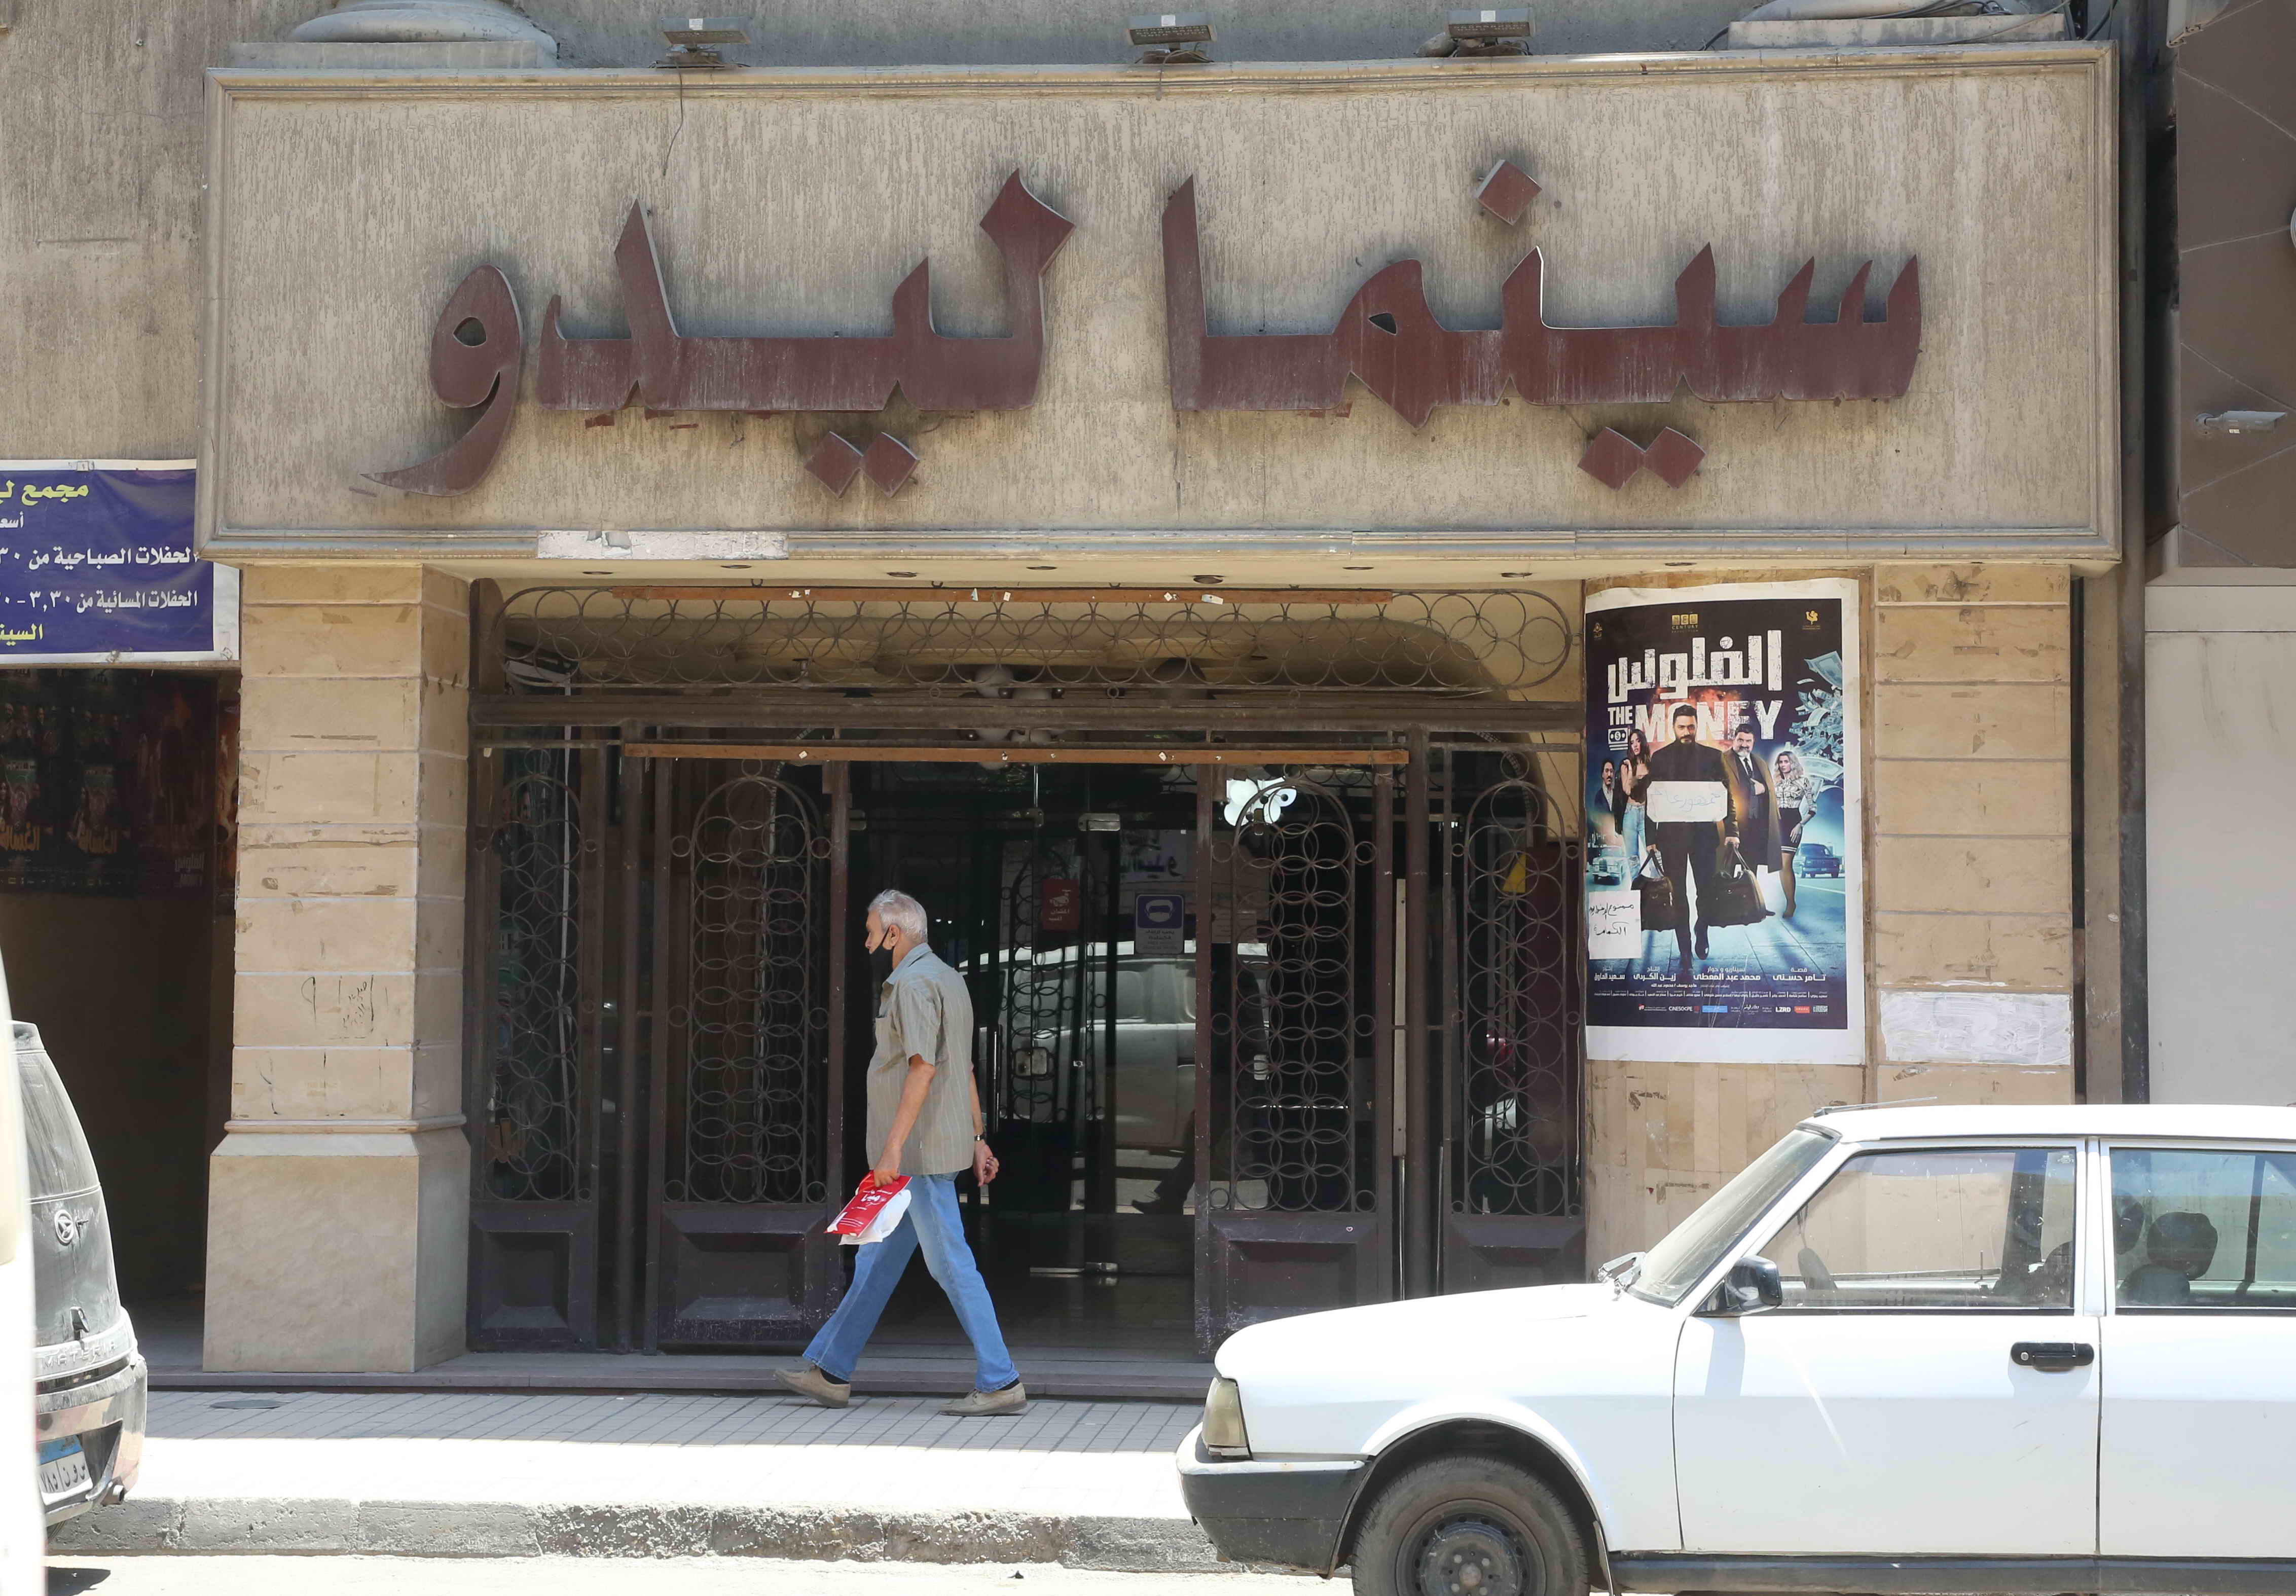 Cairo cinema